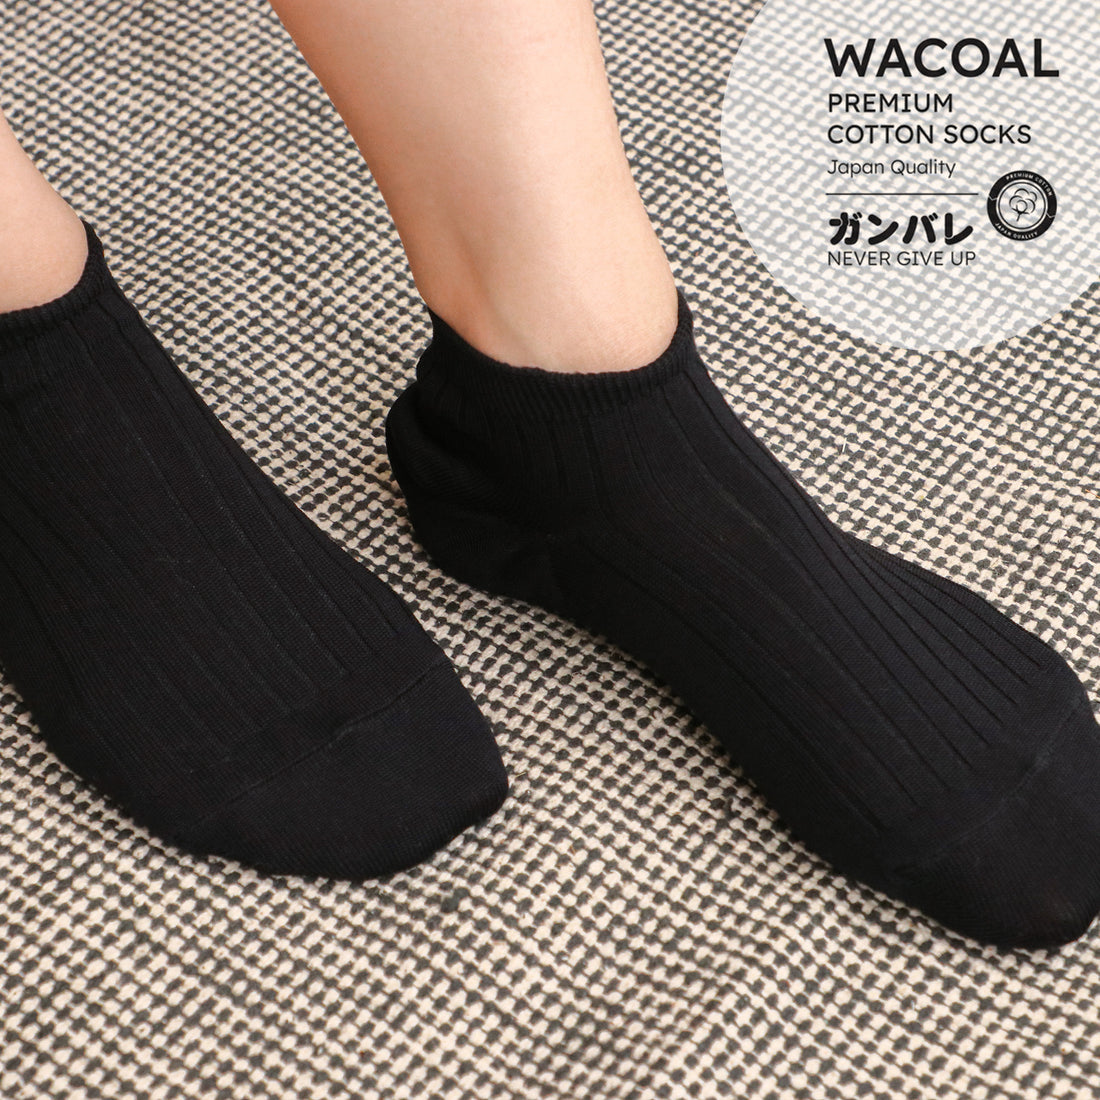 ถุงเท้าข้้อสั้น Cotton Socks Anti-bacteria รุ่น WW1106  สีดำ (BL)